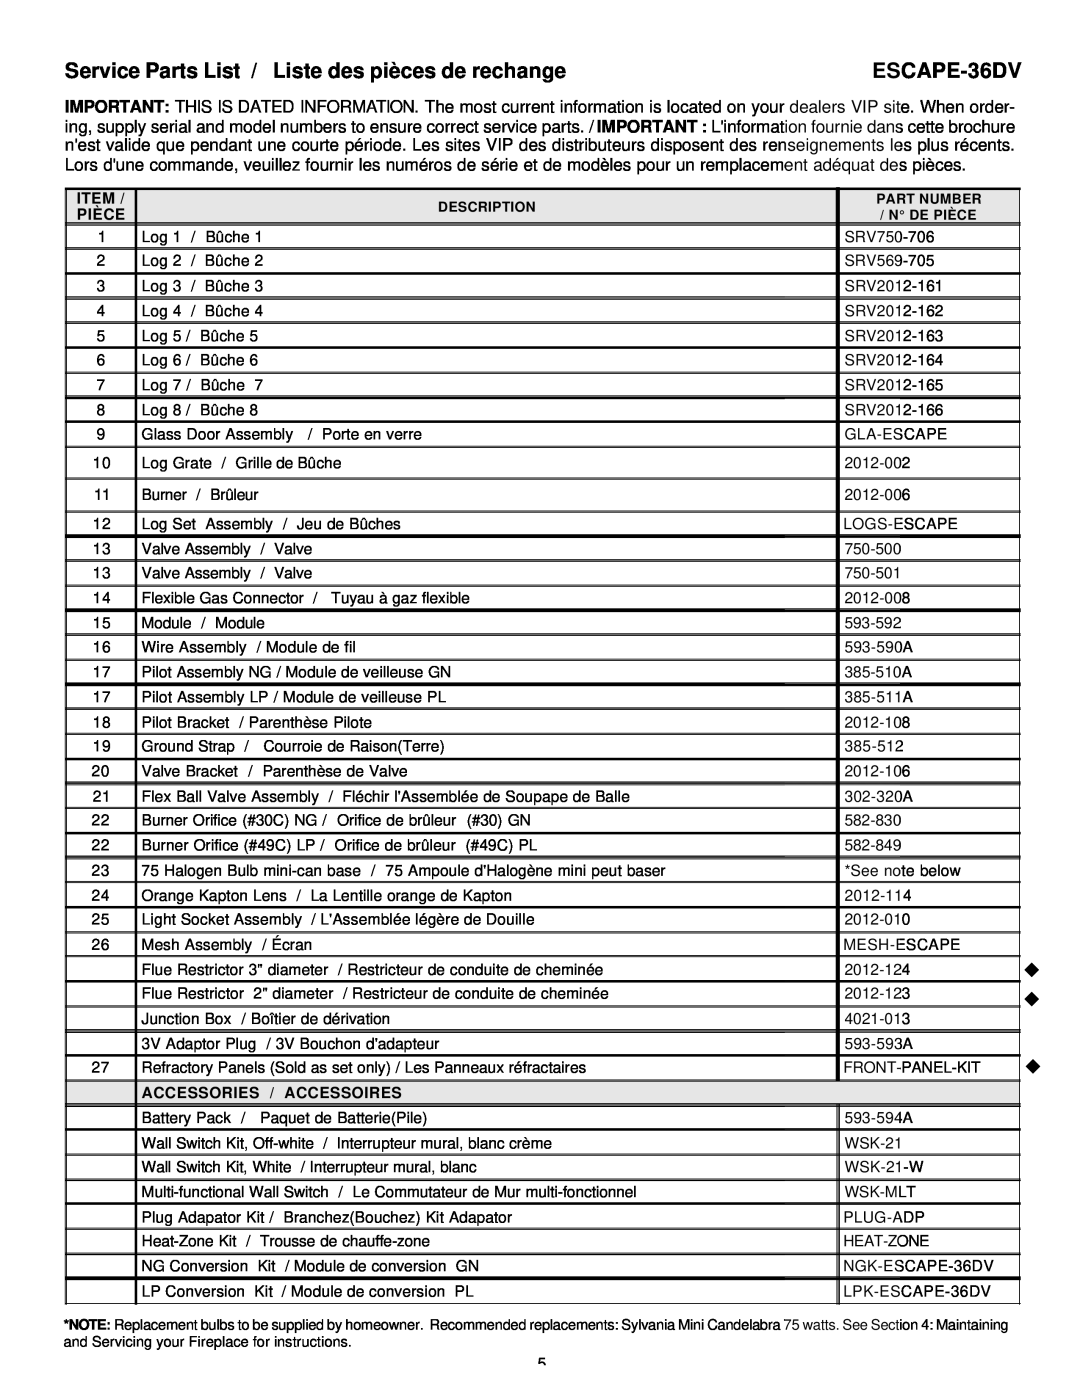 Heat & Glo LifeStyle manual Service Parts List / Liste des pièces de rechange, ESCAPE-36DV, u u u, Pièce 